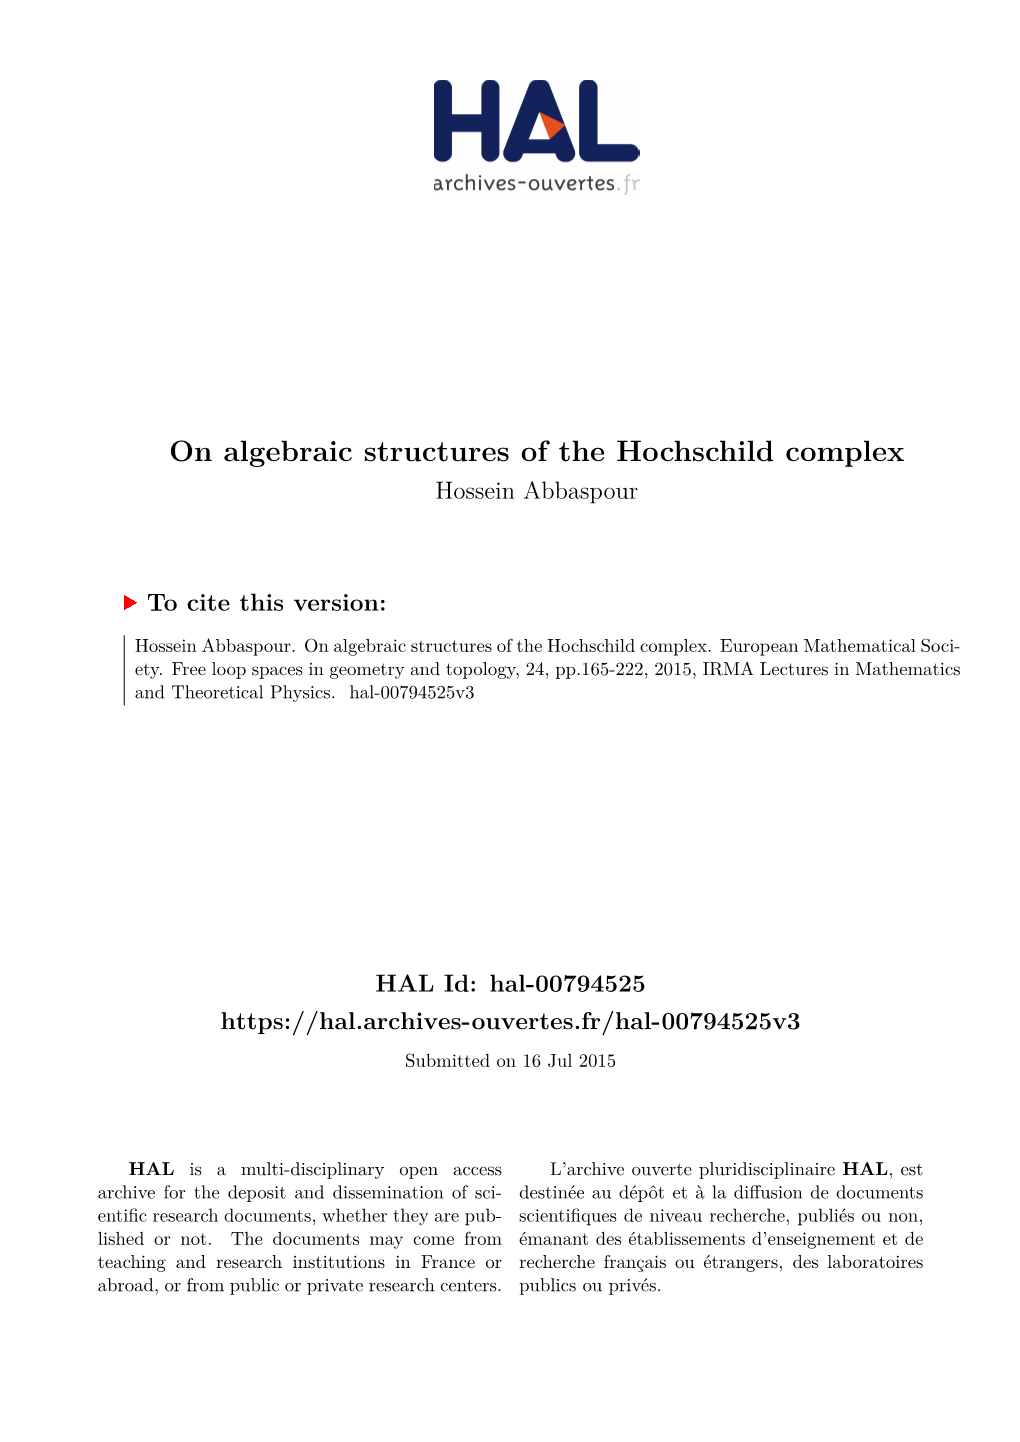 On Algebraic Structures of the Hochschild Complex Hossein Abbaspour